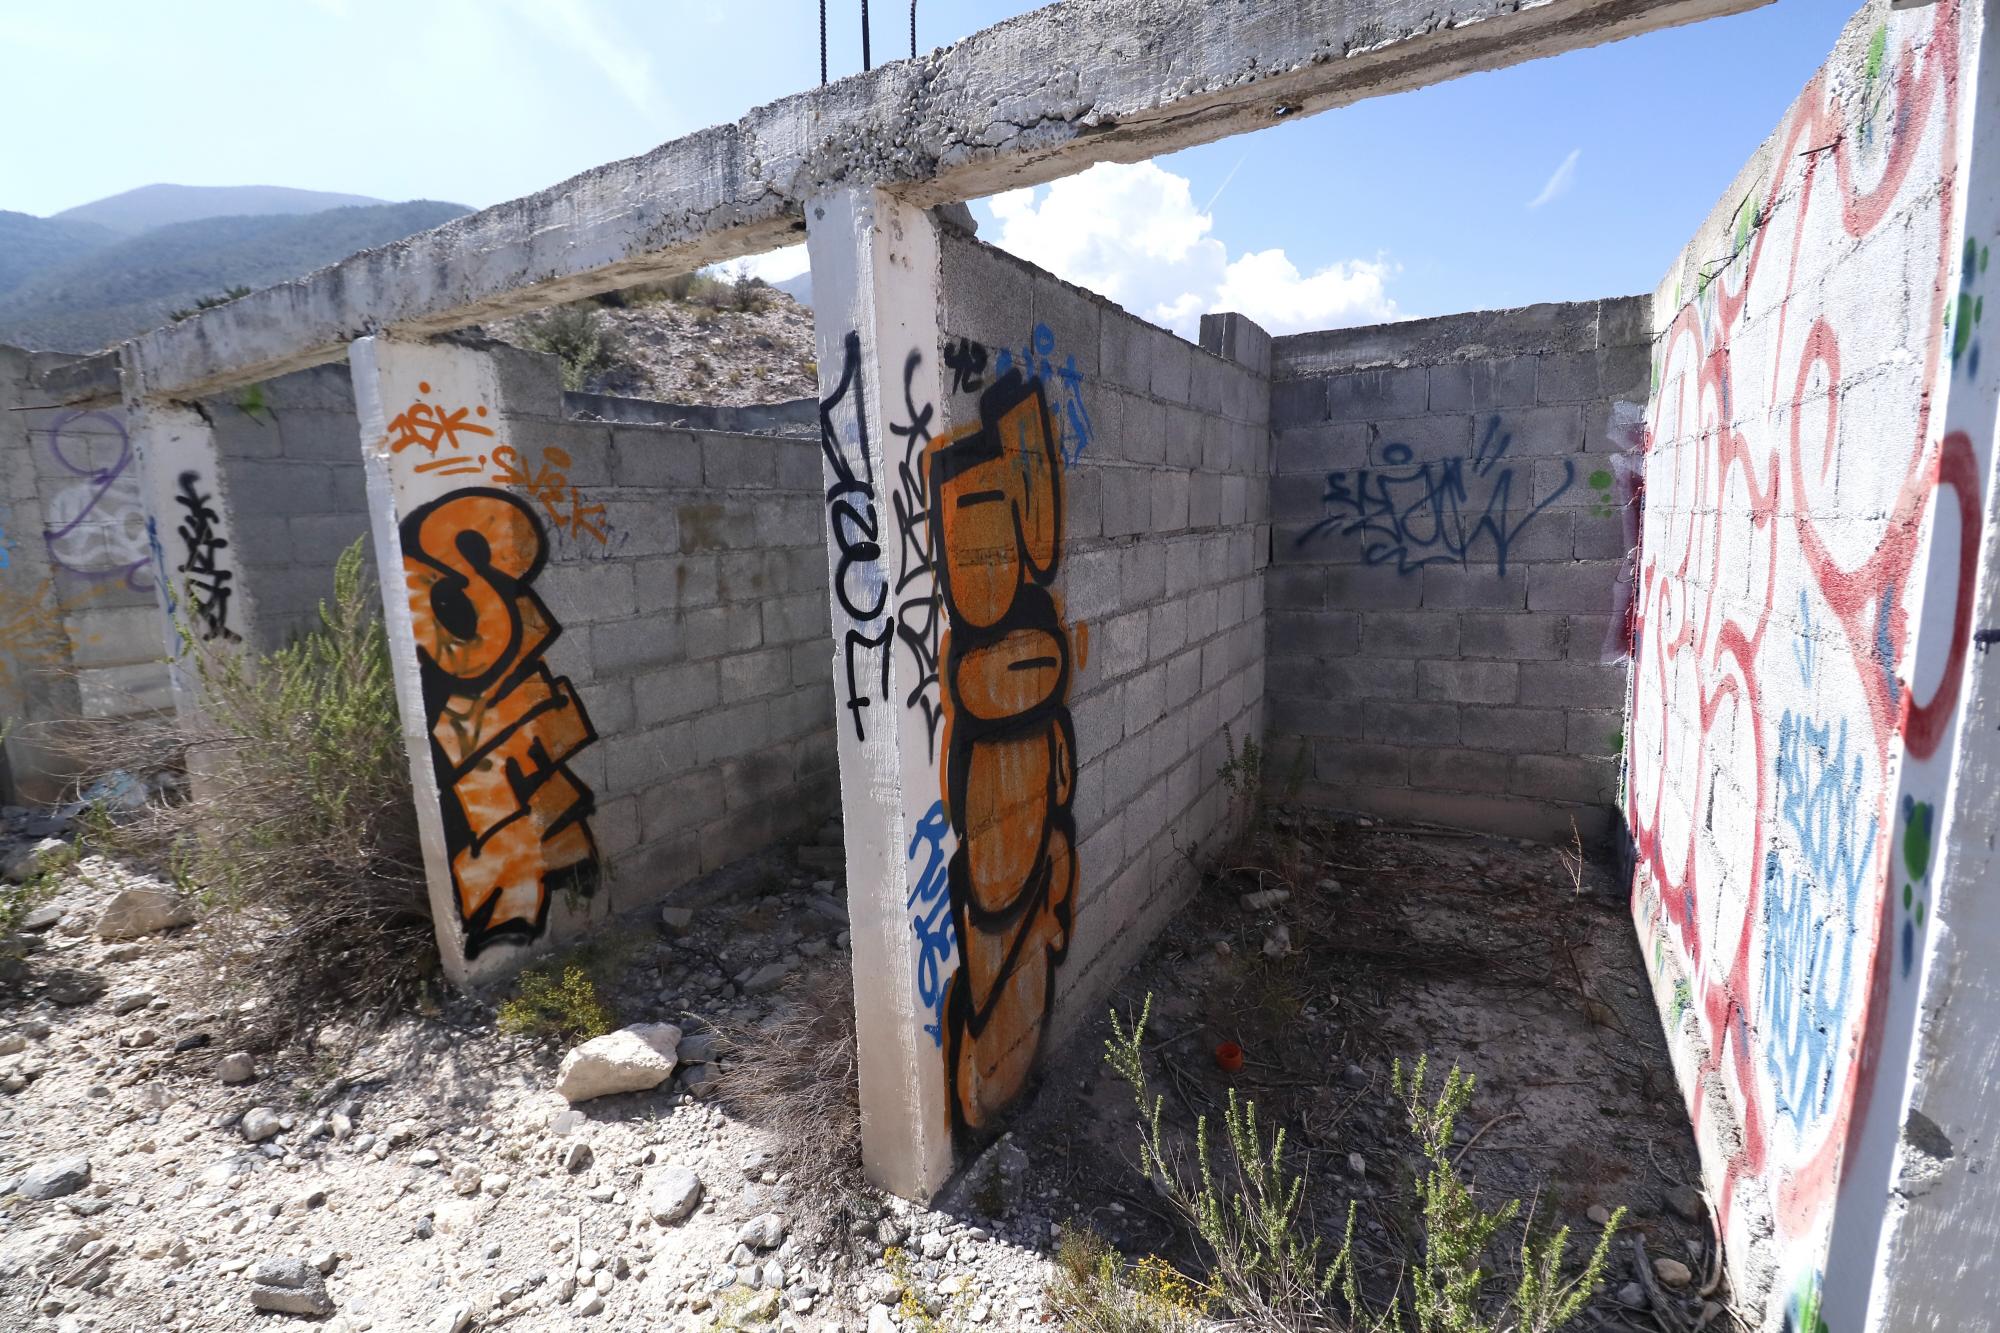 $!Completamente vandalizada y en abandono se encuentra la plaza construida cerca del fraccionamiento Sierra Azul, en las faldas de la Sierra de Zapalinamé.